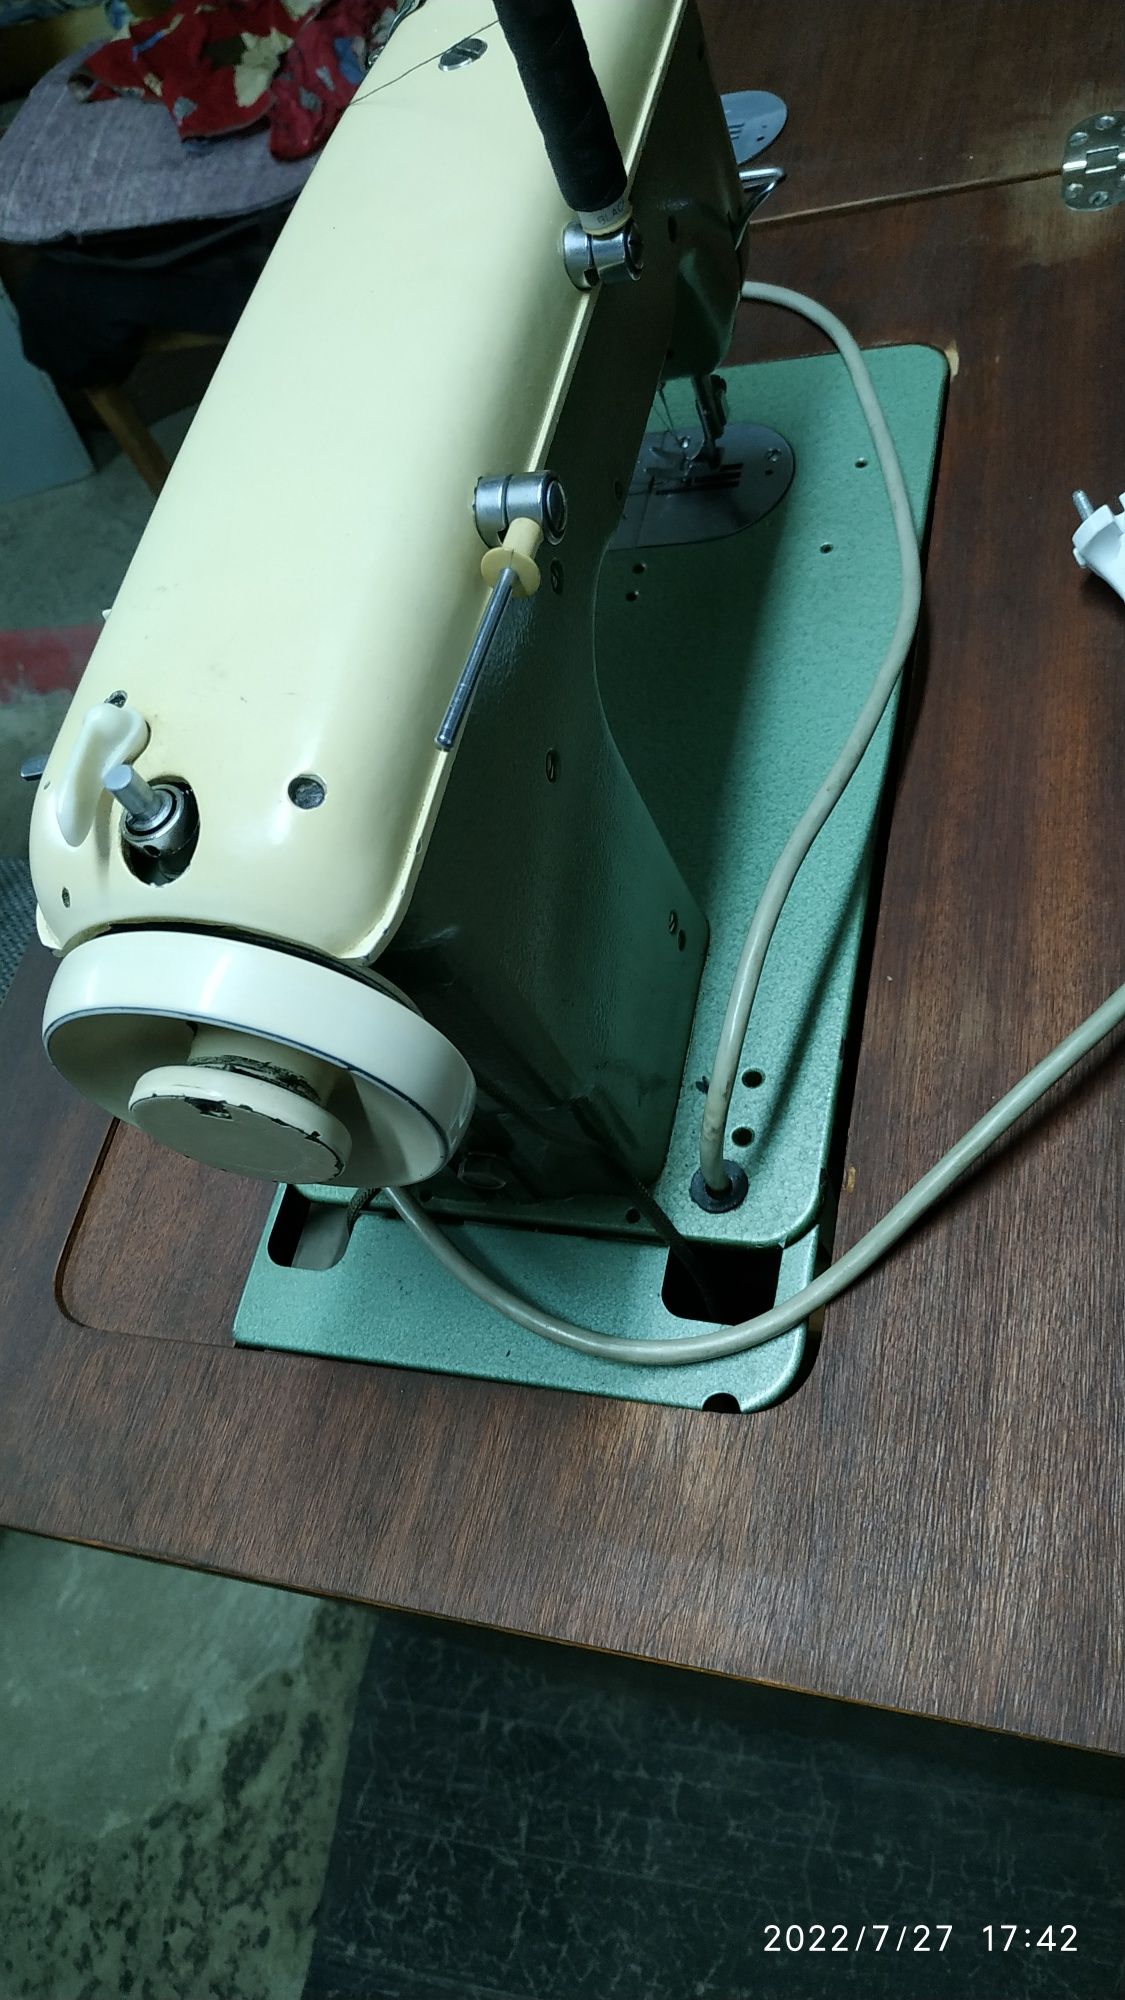 Продам швейную машинку   Köhler Źihk-Zahk.